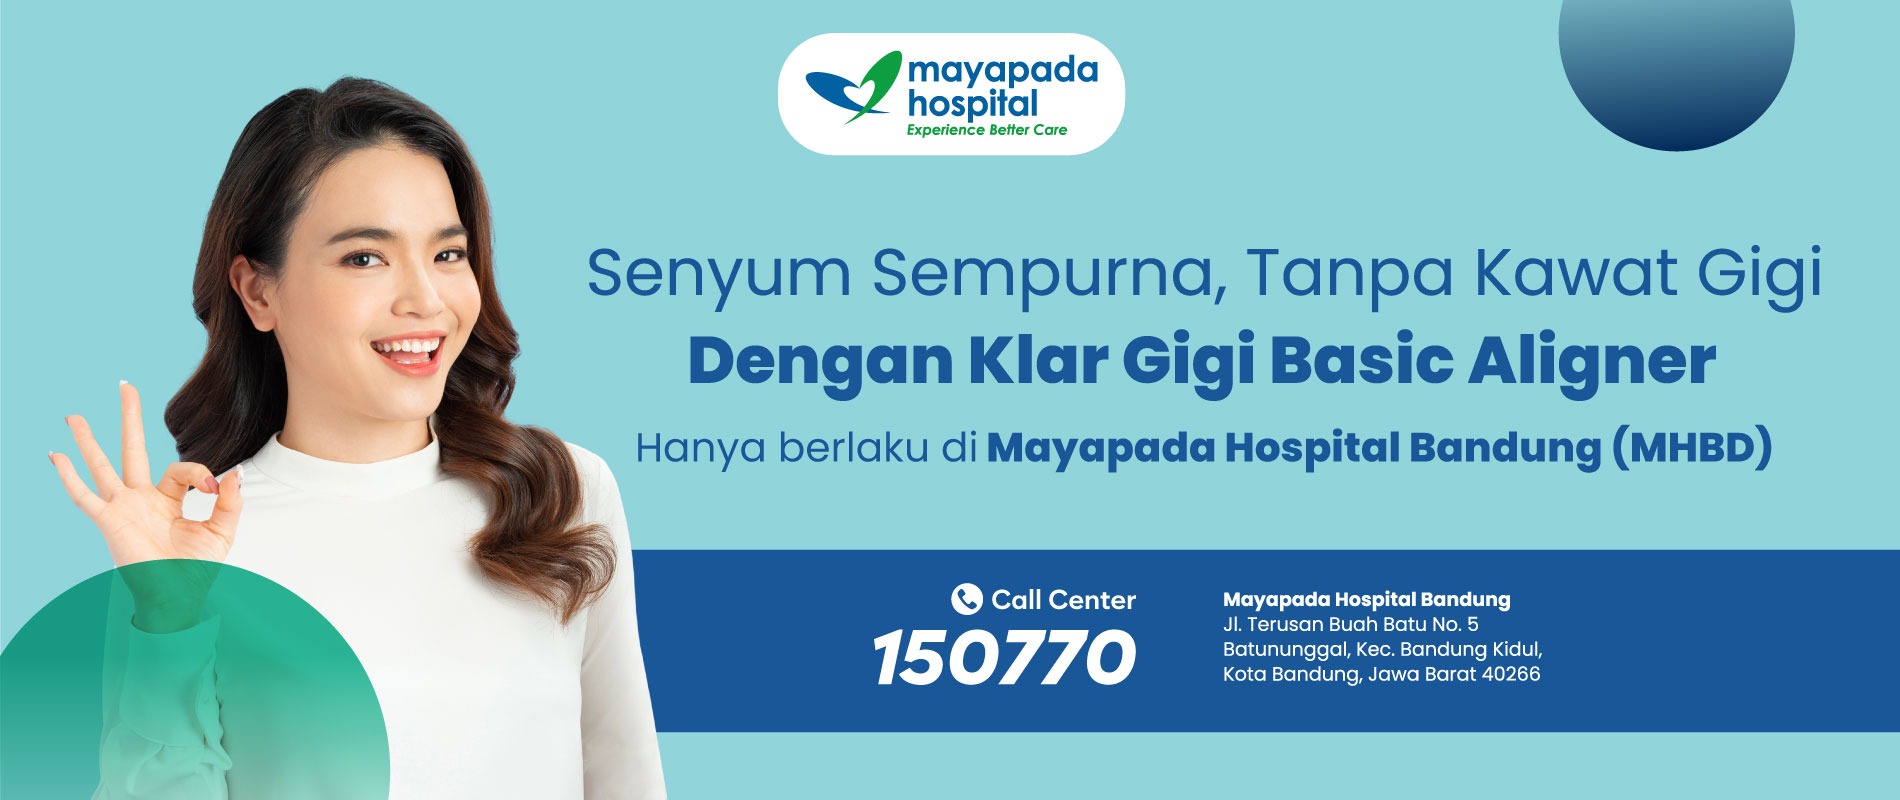 Promo Klar Gigi Mayapada Hospital Bandung (MHBD) IMG